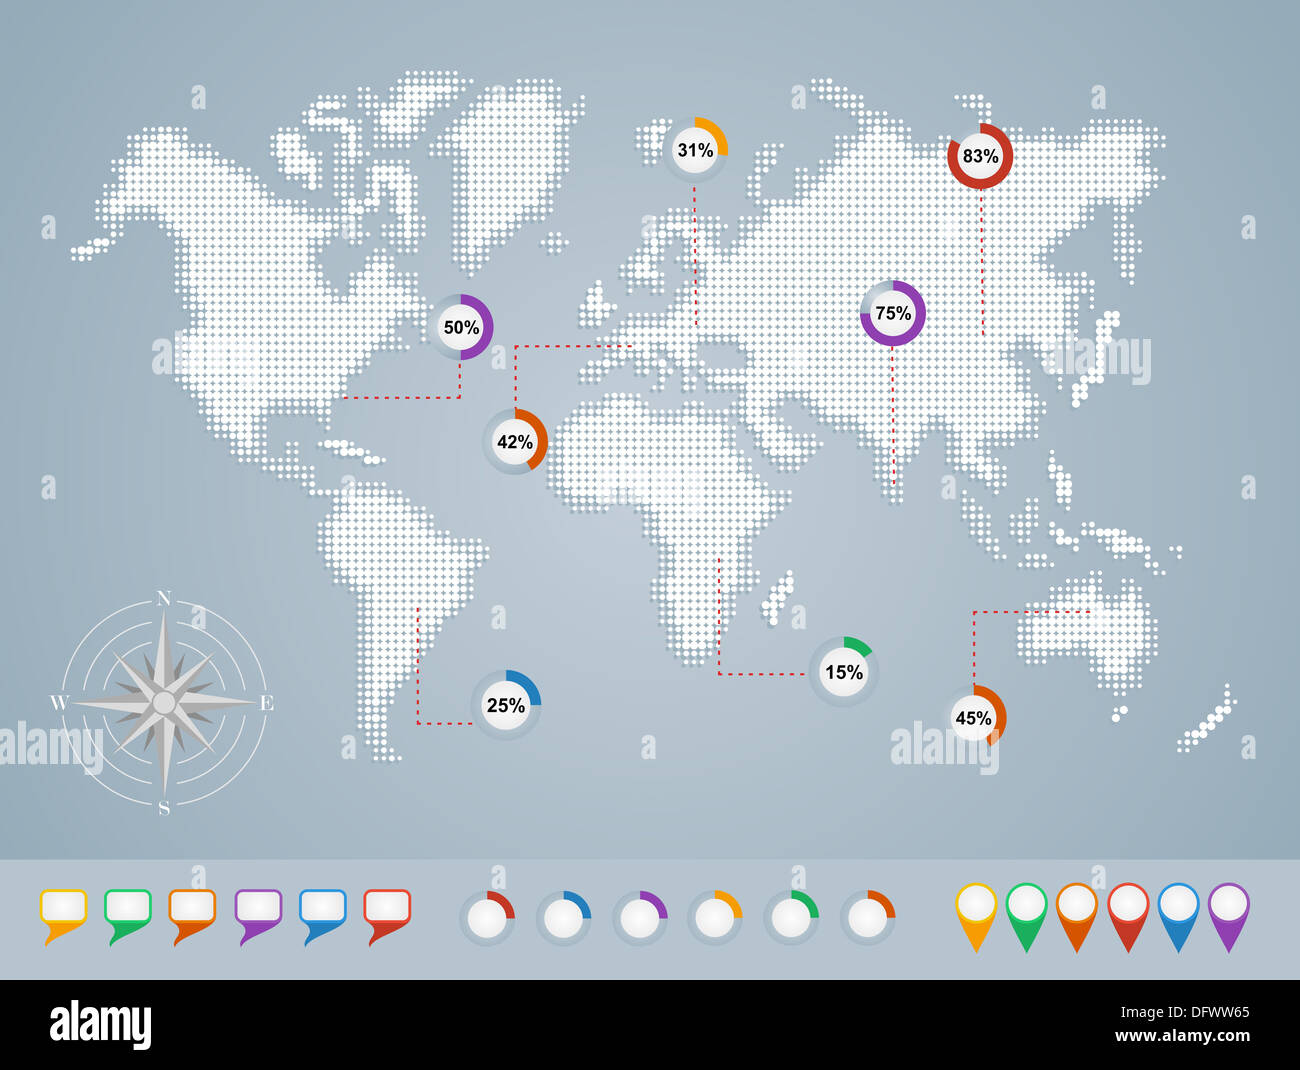 Weltkarte, Geo Position Zeiger Infografiken Vorlage. EPS10 Vektor-Datei organisiert in Schichten für die einfache Bearbeitung. Stockfoto